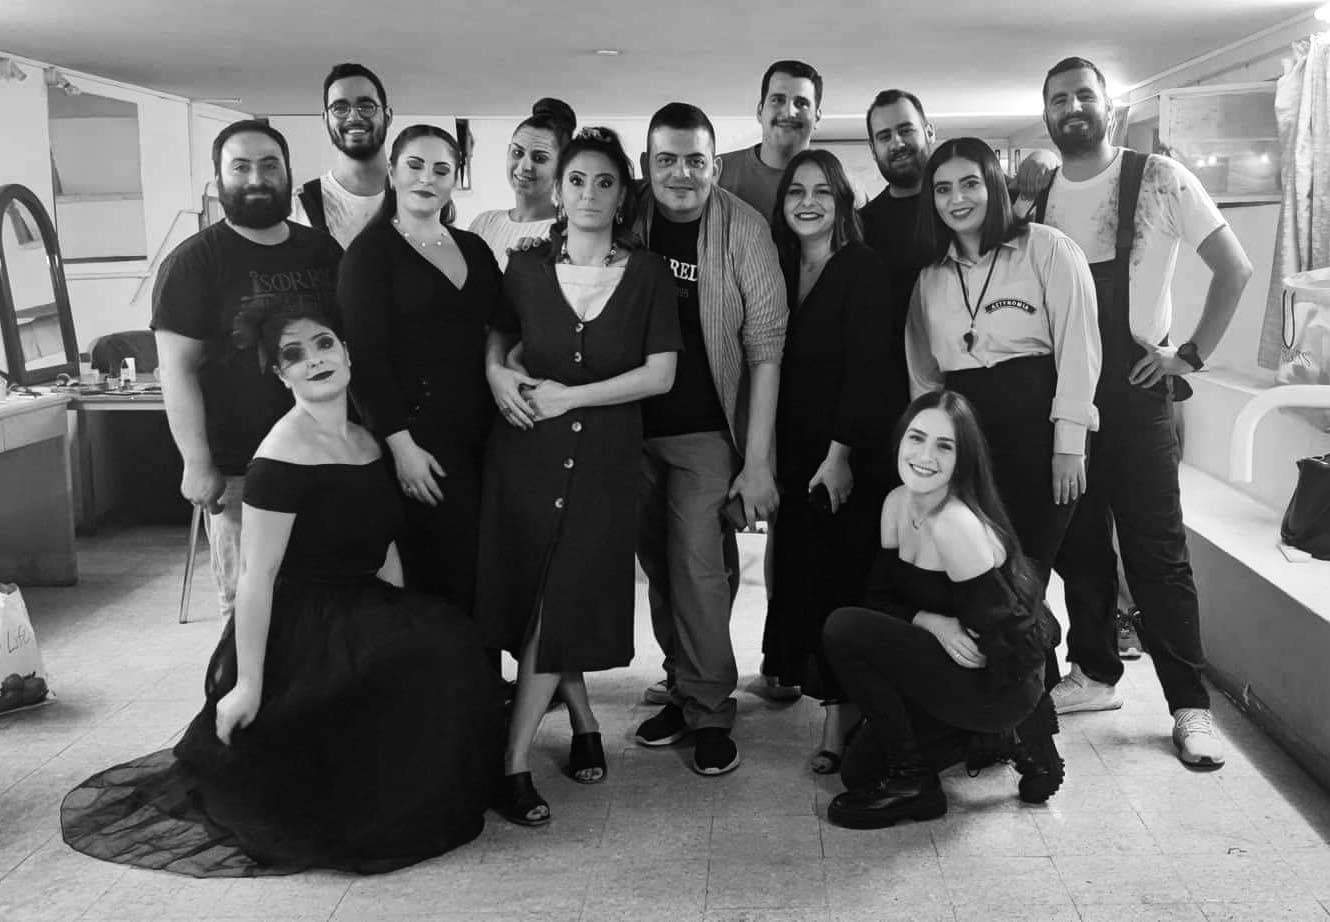 Ανακοίνωση ΕΔΟΝ Λευκωσάς – Κερύνειας για την διάκριση μελών της θεατρικής της ομάδας στο 35ο Παγκύπριο Φεστιβάλ Ερασιτεχνικού Θεάτρου του ΘΟΚ